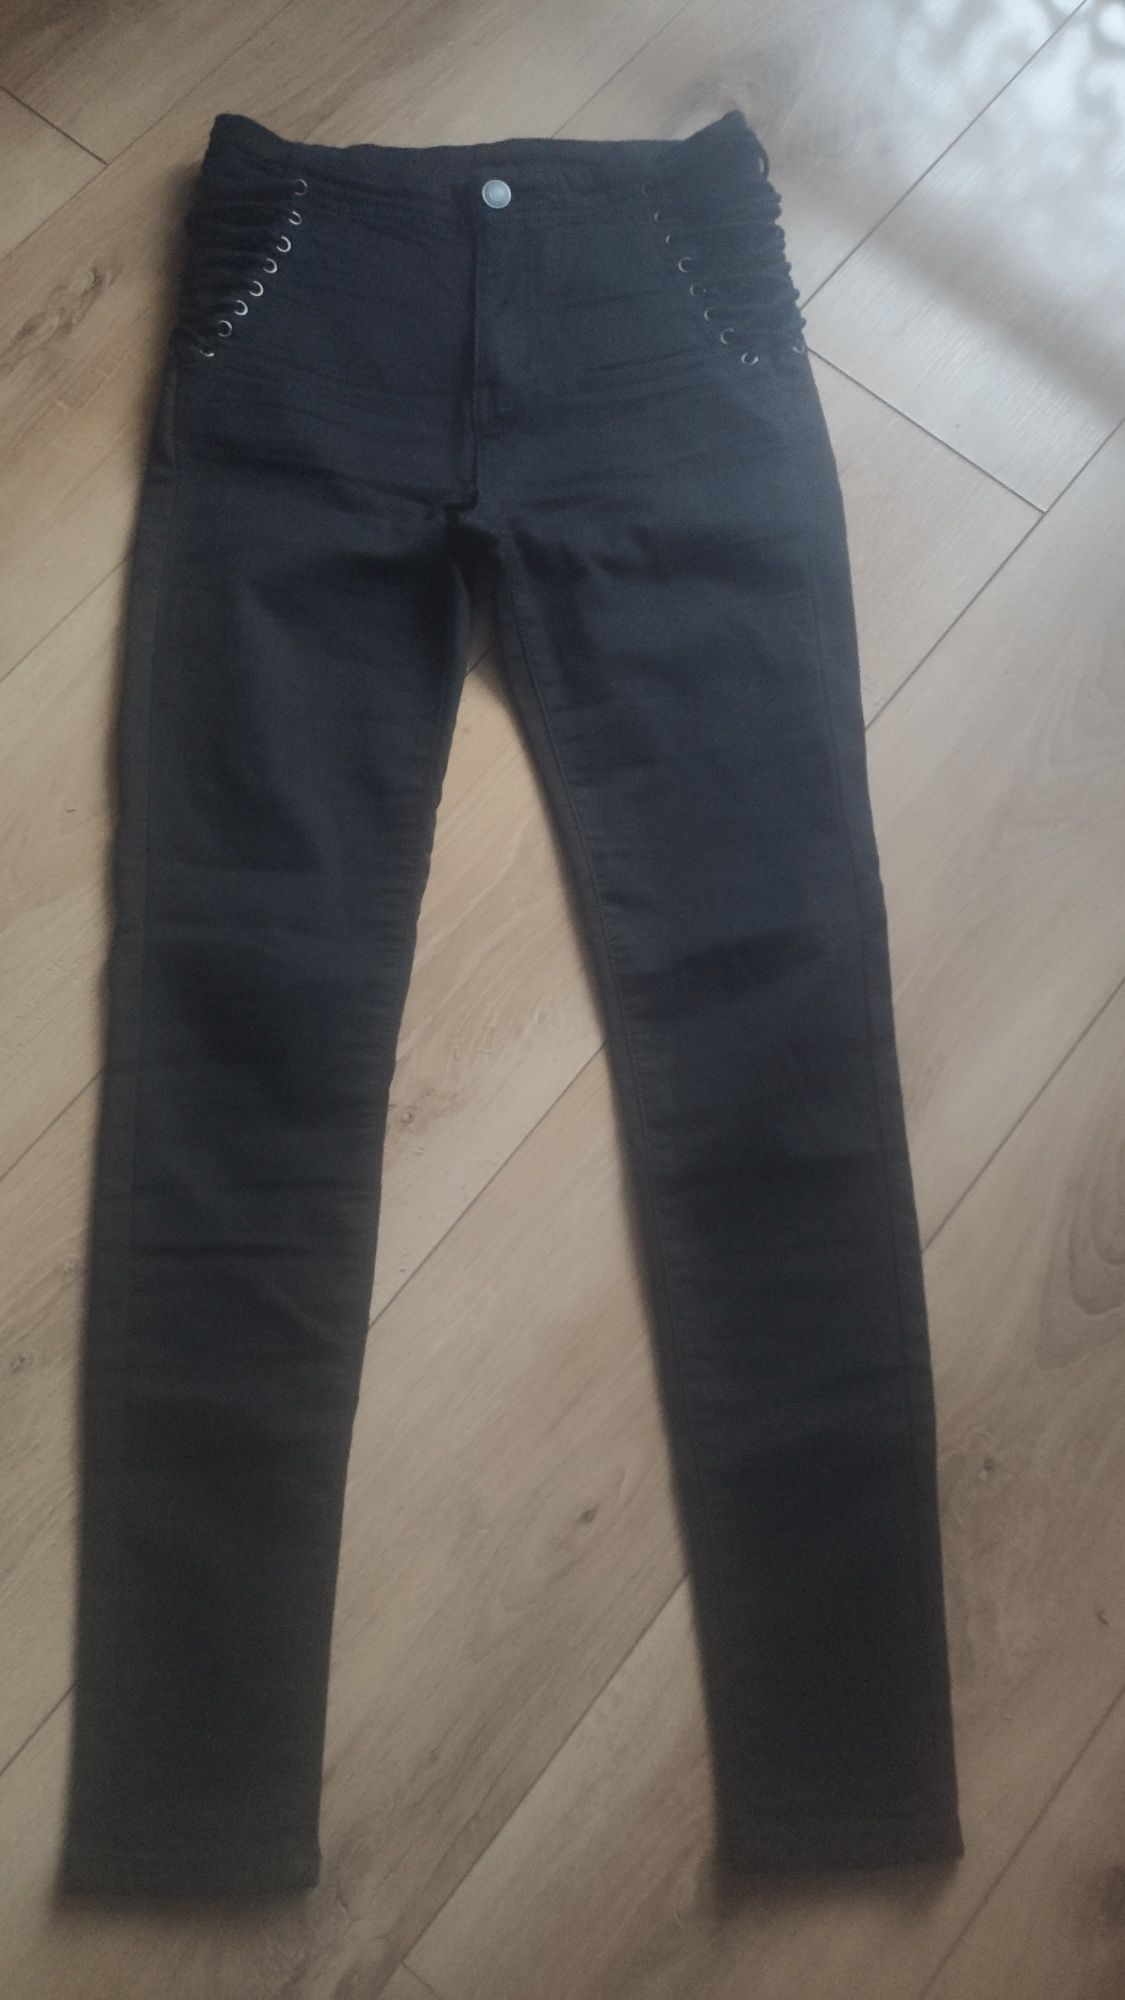 Spodnie czarne sznurowane z boku rozmiar 38